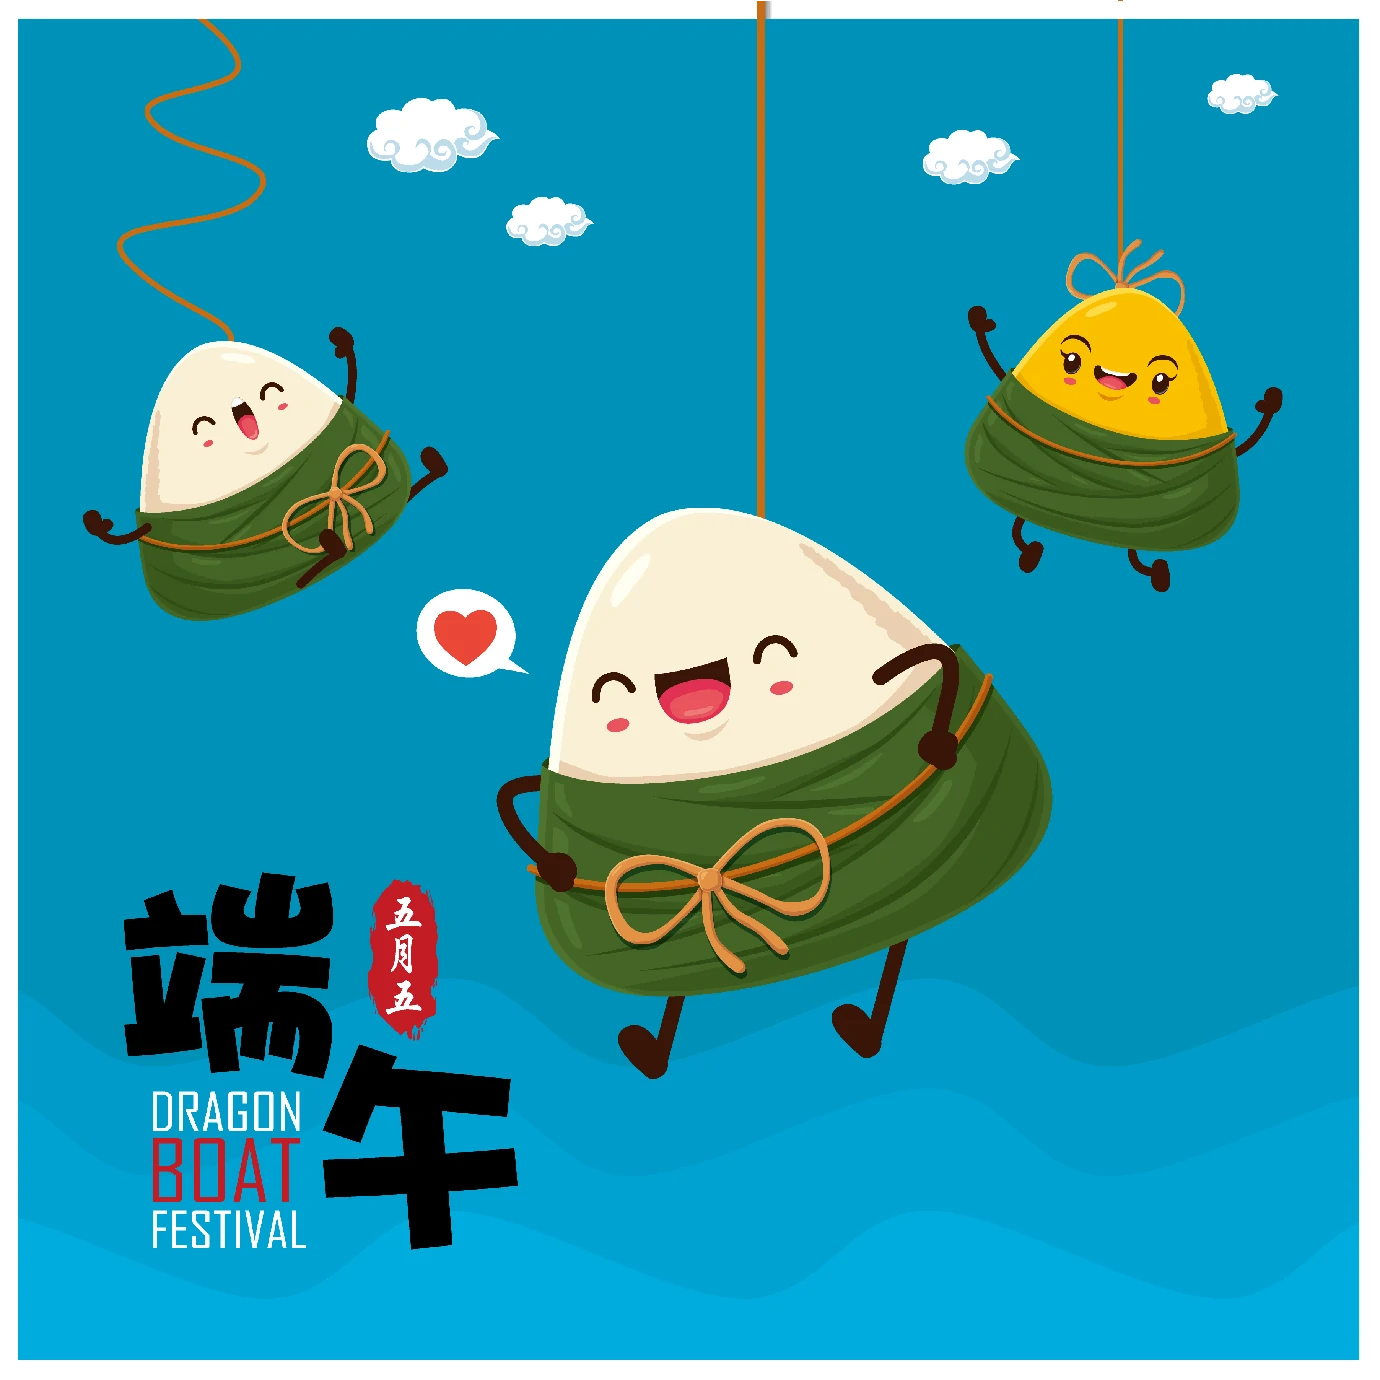 中国传统节日卡通手绘端午节赛龙舟粽子插画海报AI矢量设计素材【065】